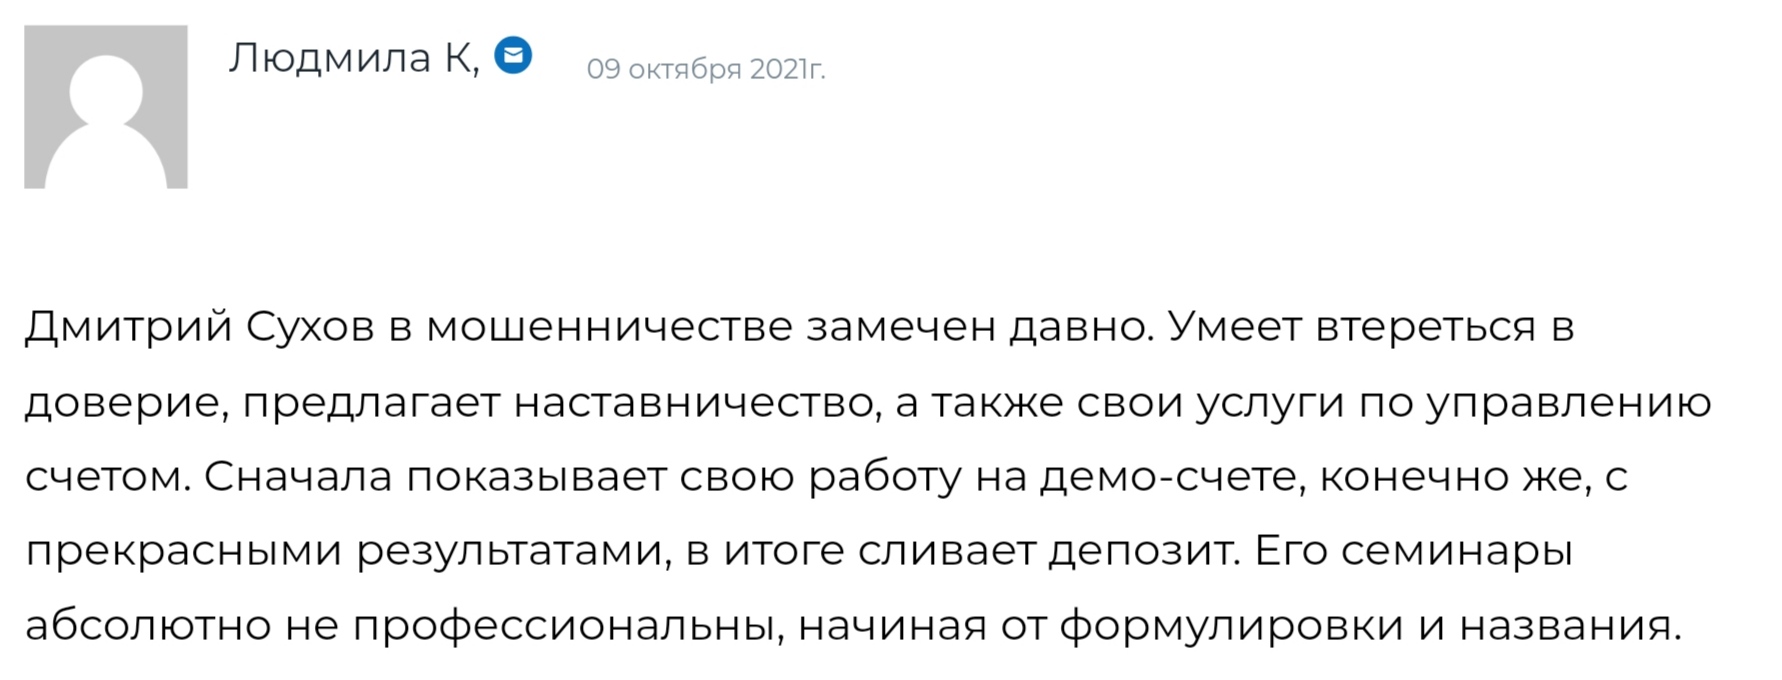 Дмитрий Сухов отзывы